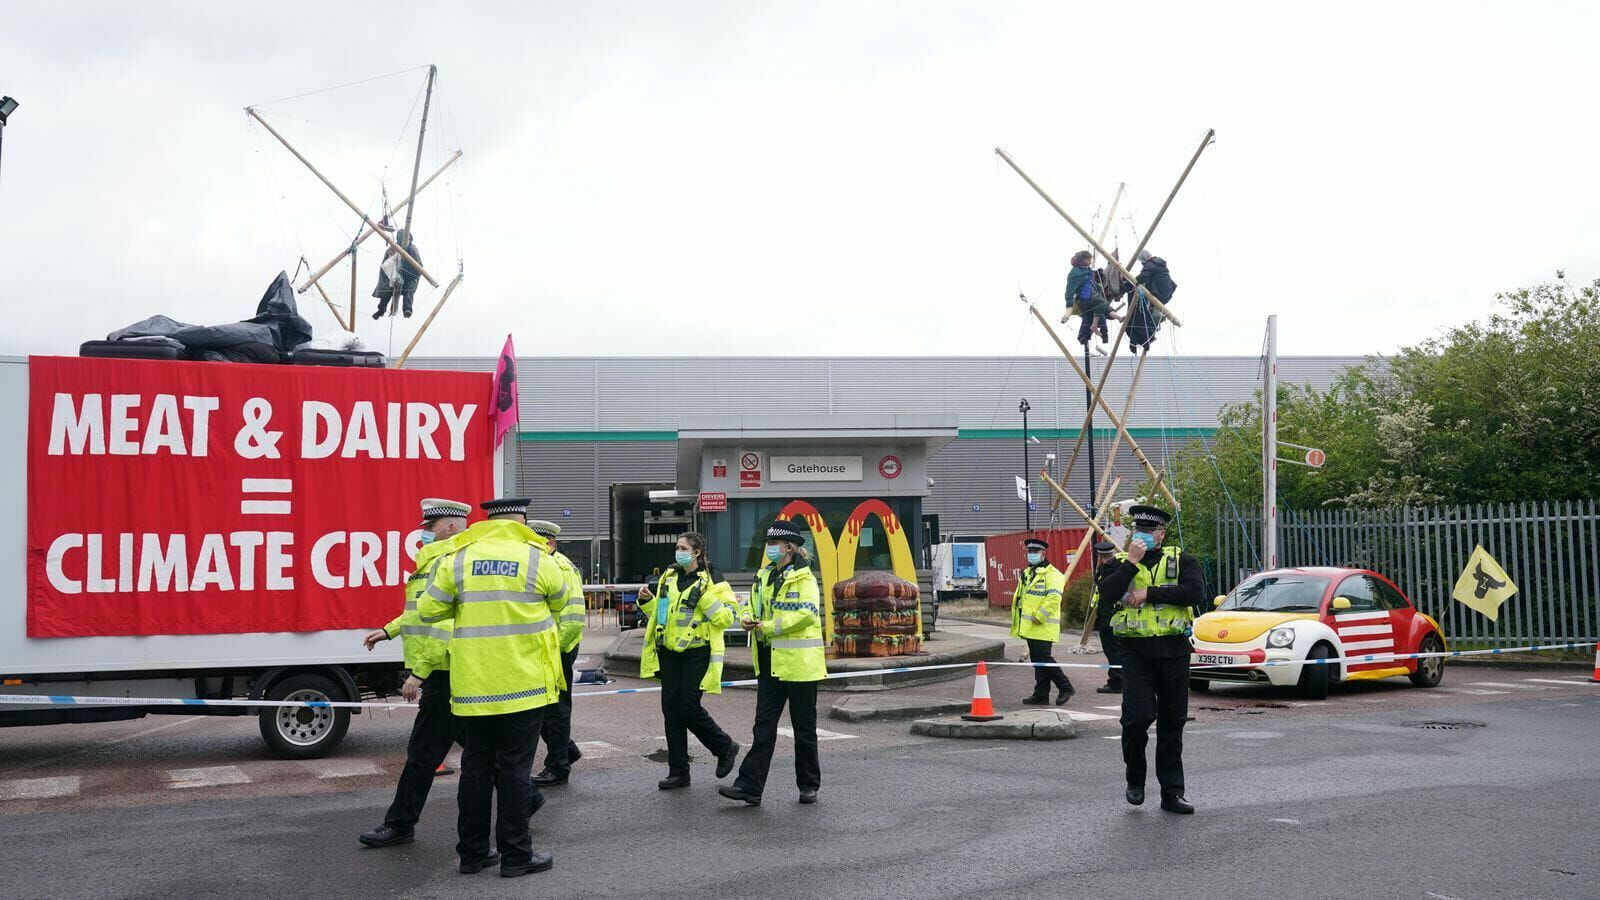 Борцы за права животных заблокировали выезд со складов McDonald's в Великобритании